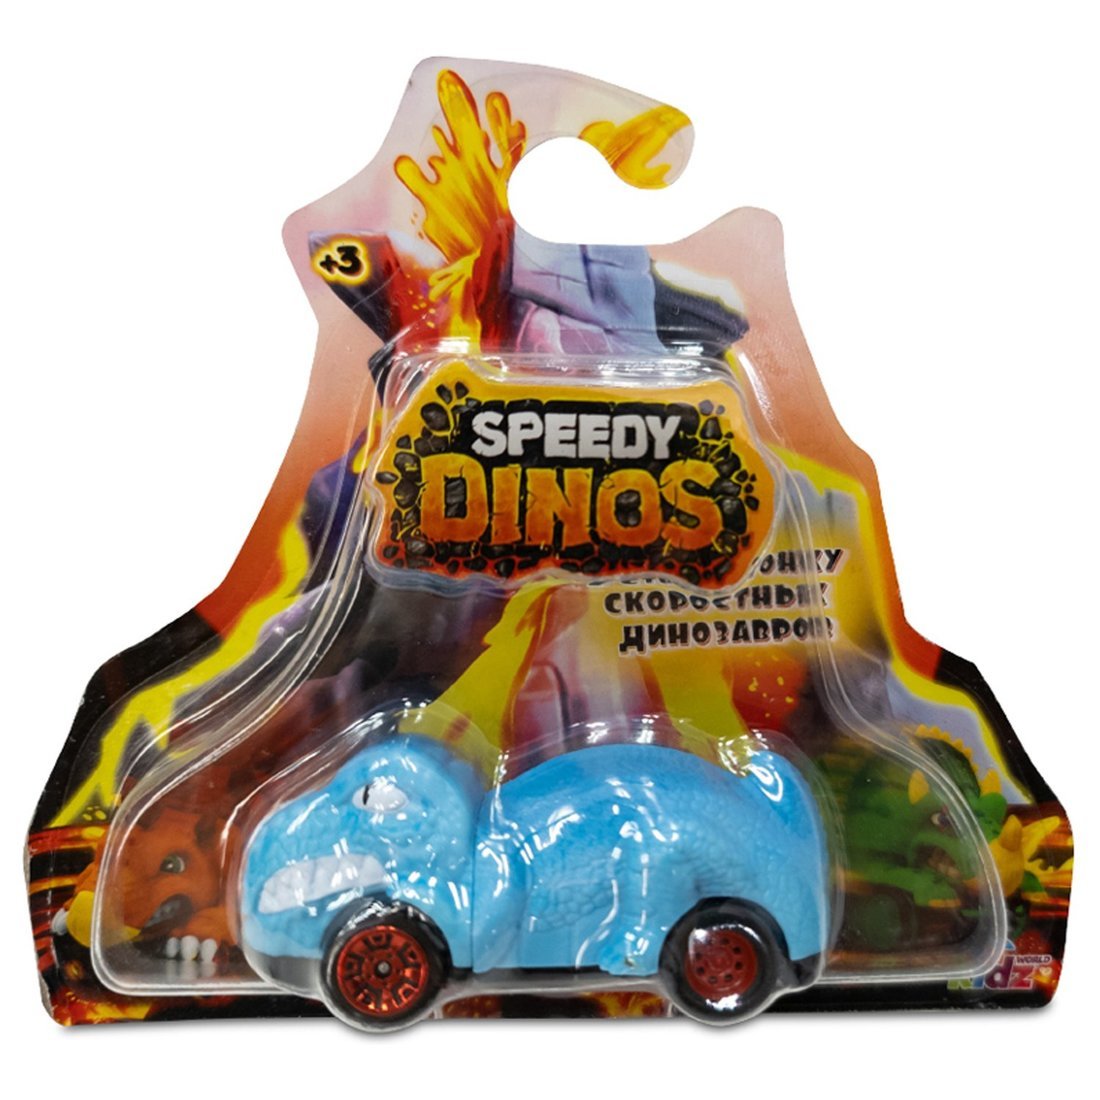 Машинка фрикционная Скоростные динозавры  Speedy Dinos в ассортименте